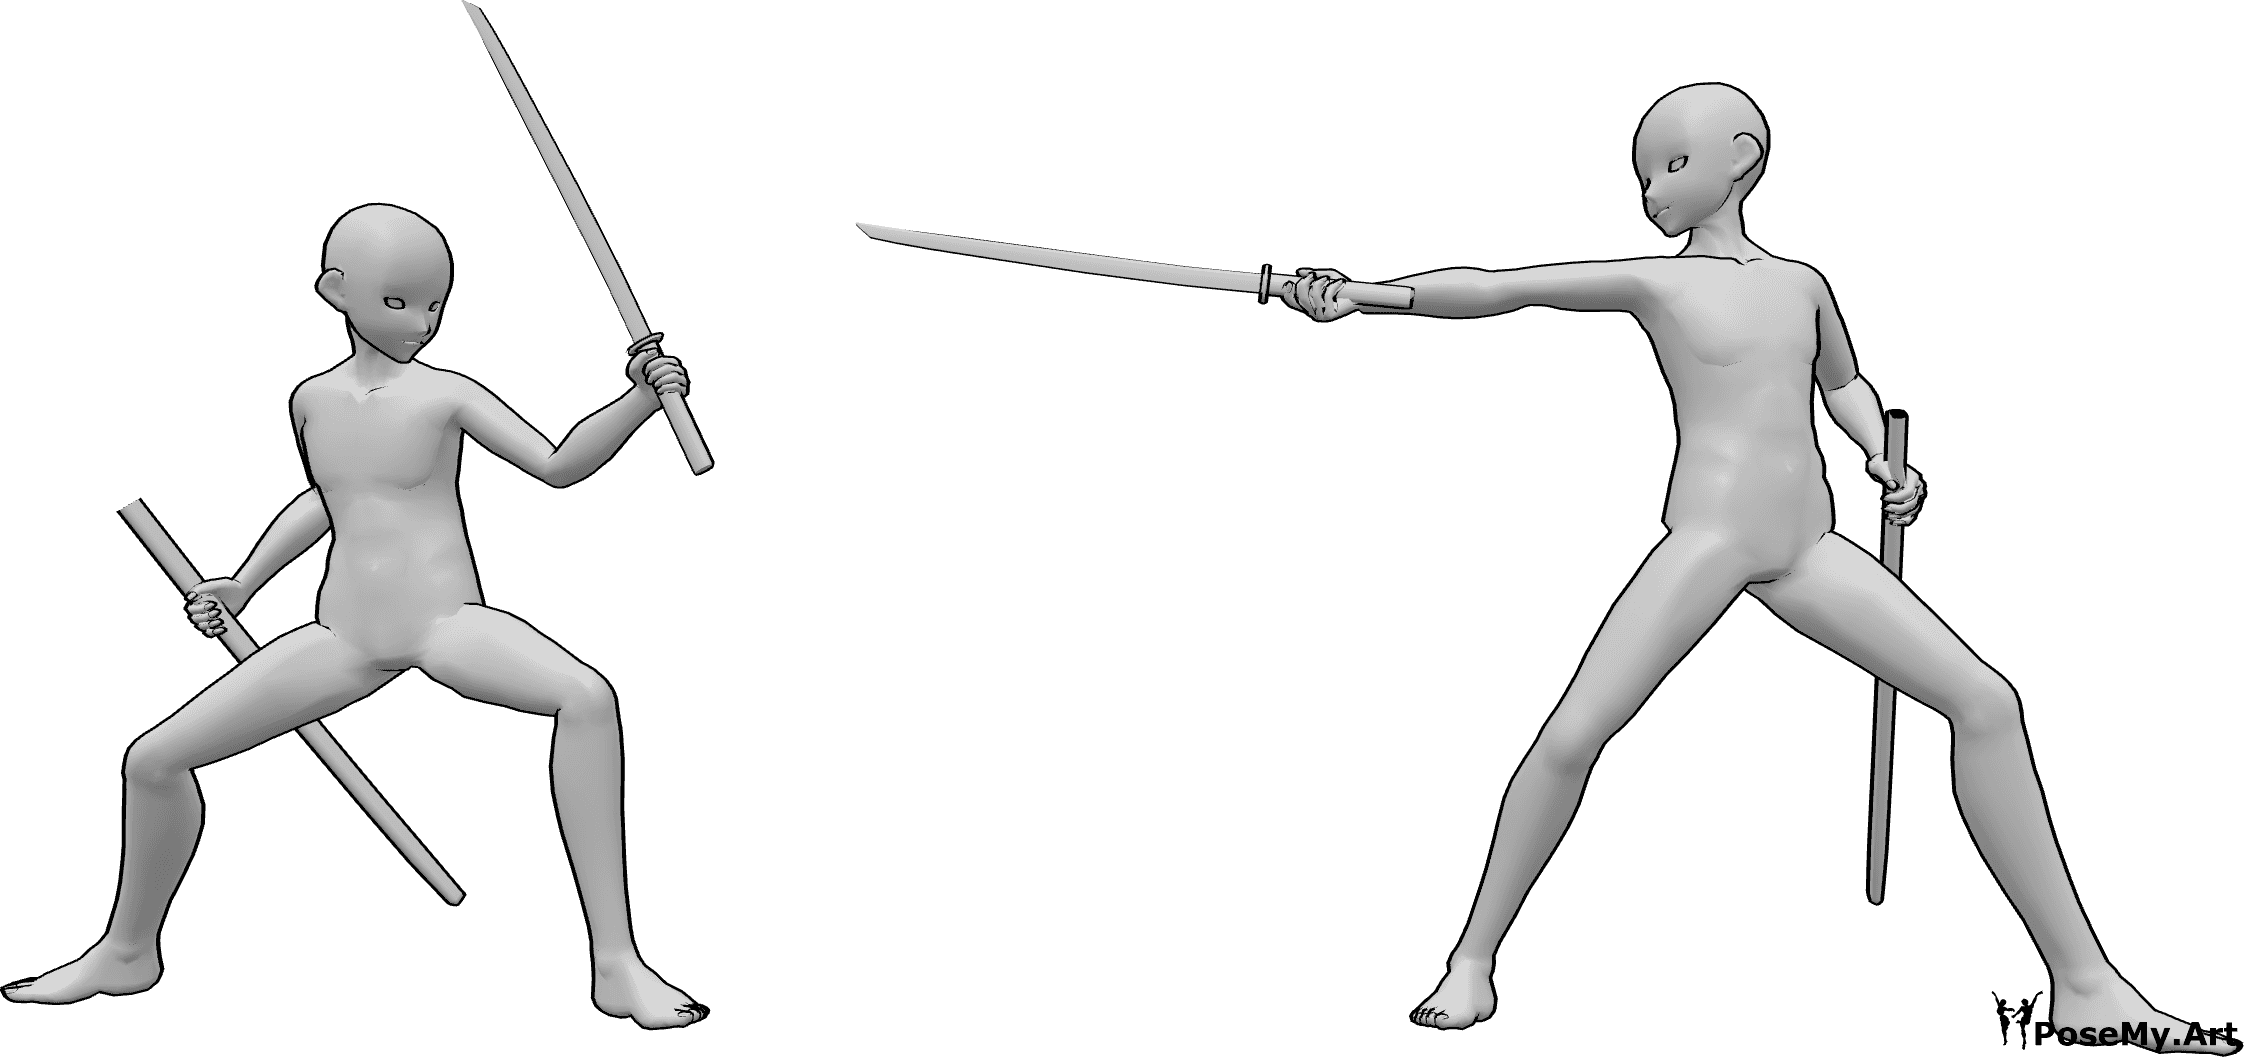 Referência de poses- Pose de luta de samurai de anime - Os machos de anime enfrentam-se e convidam-se uns aos outros com as suas katanas para lutar